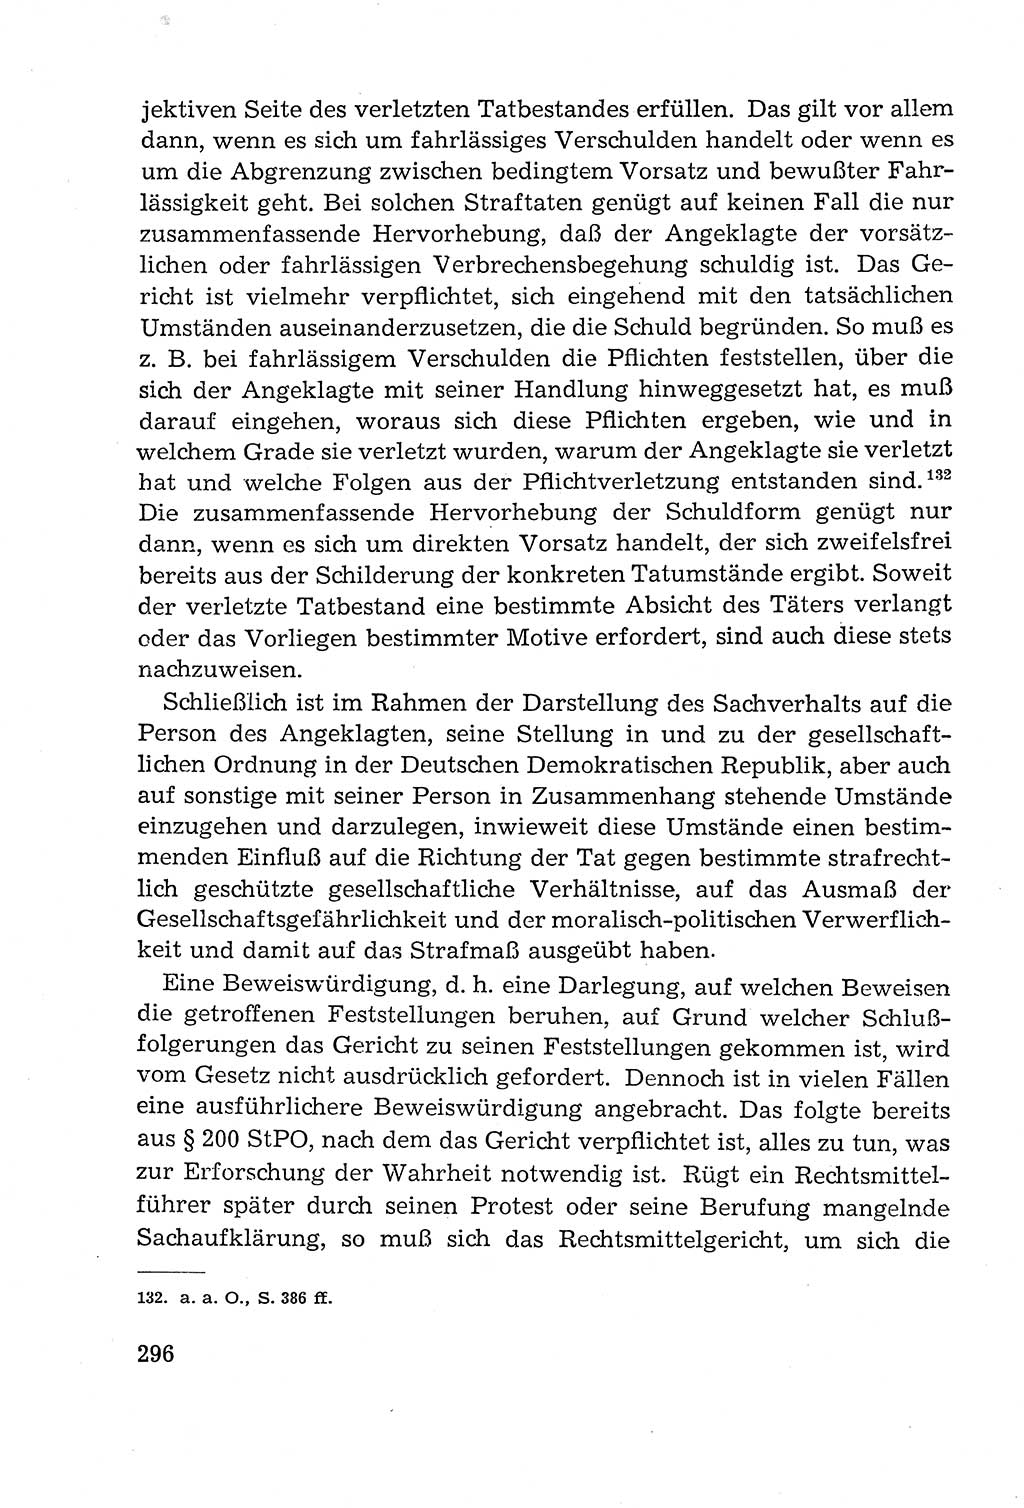 Leitfaden des Strafprozeßrechts der Deutschen Demokratischen Republik (DDR) 1959, Seite 296 (LF StPR DDR 1959, S. 296)